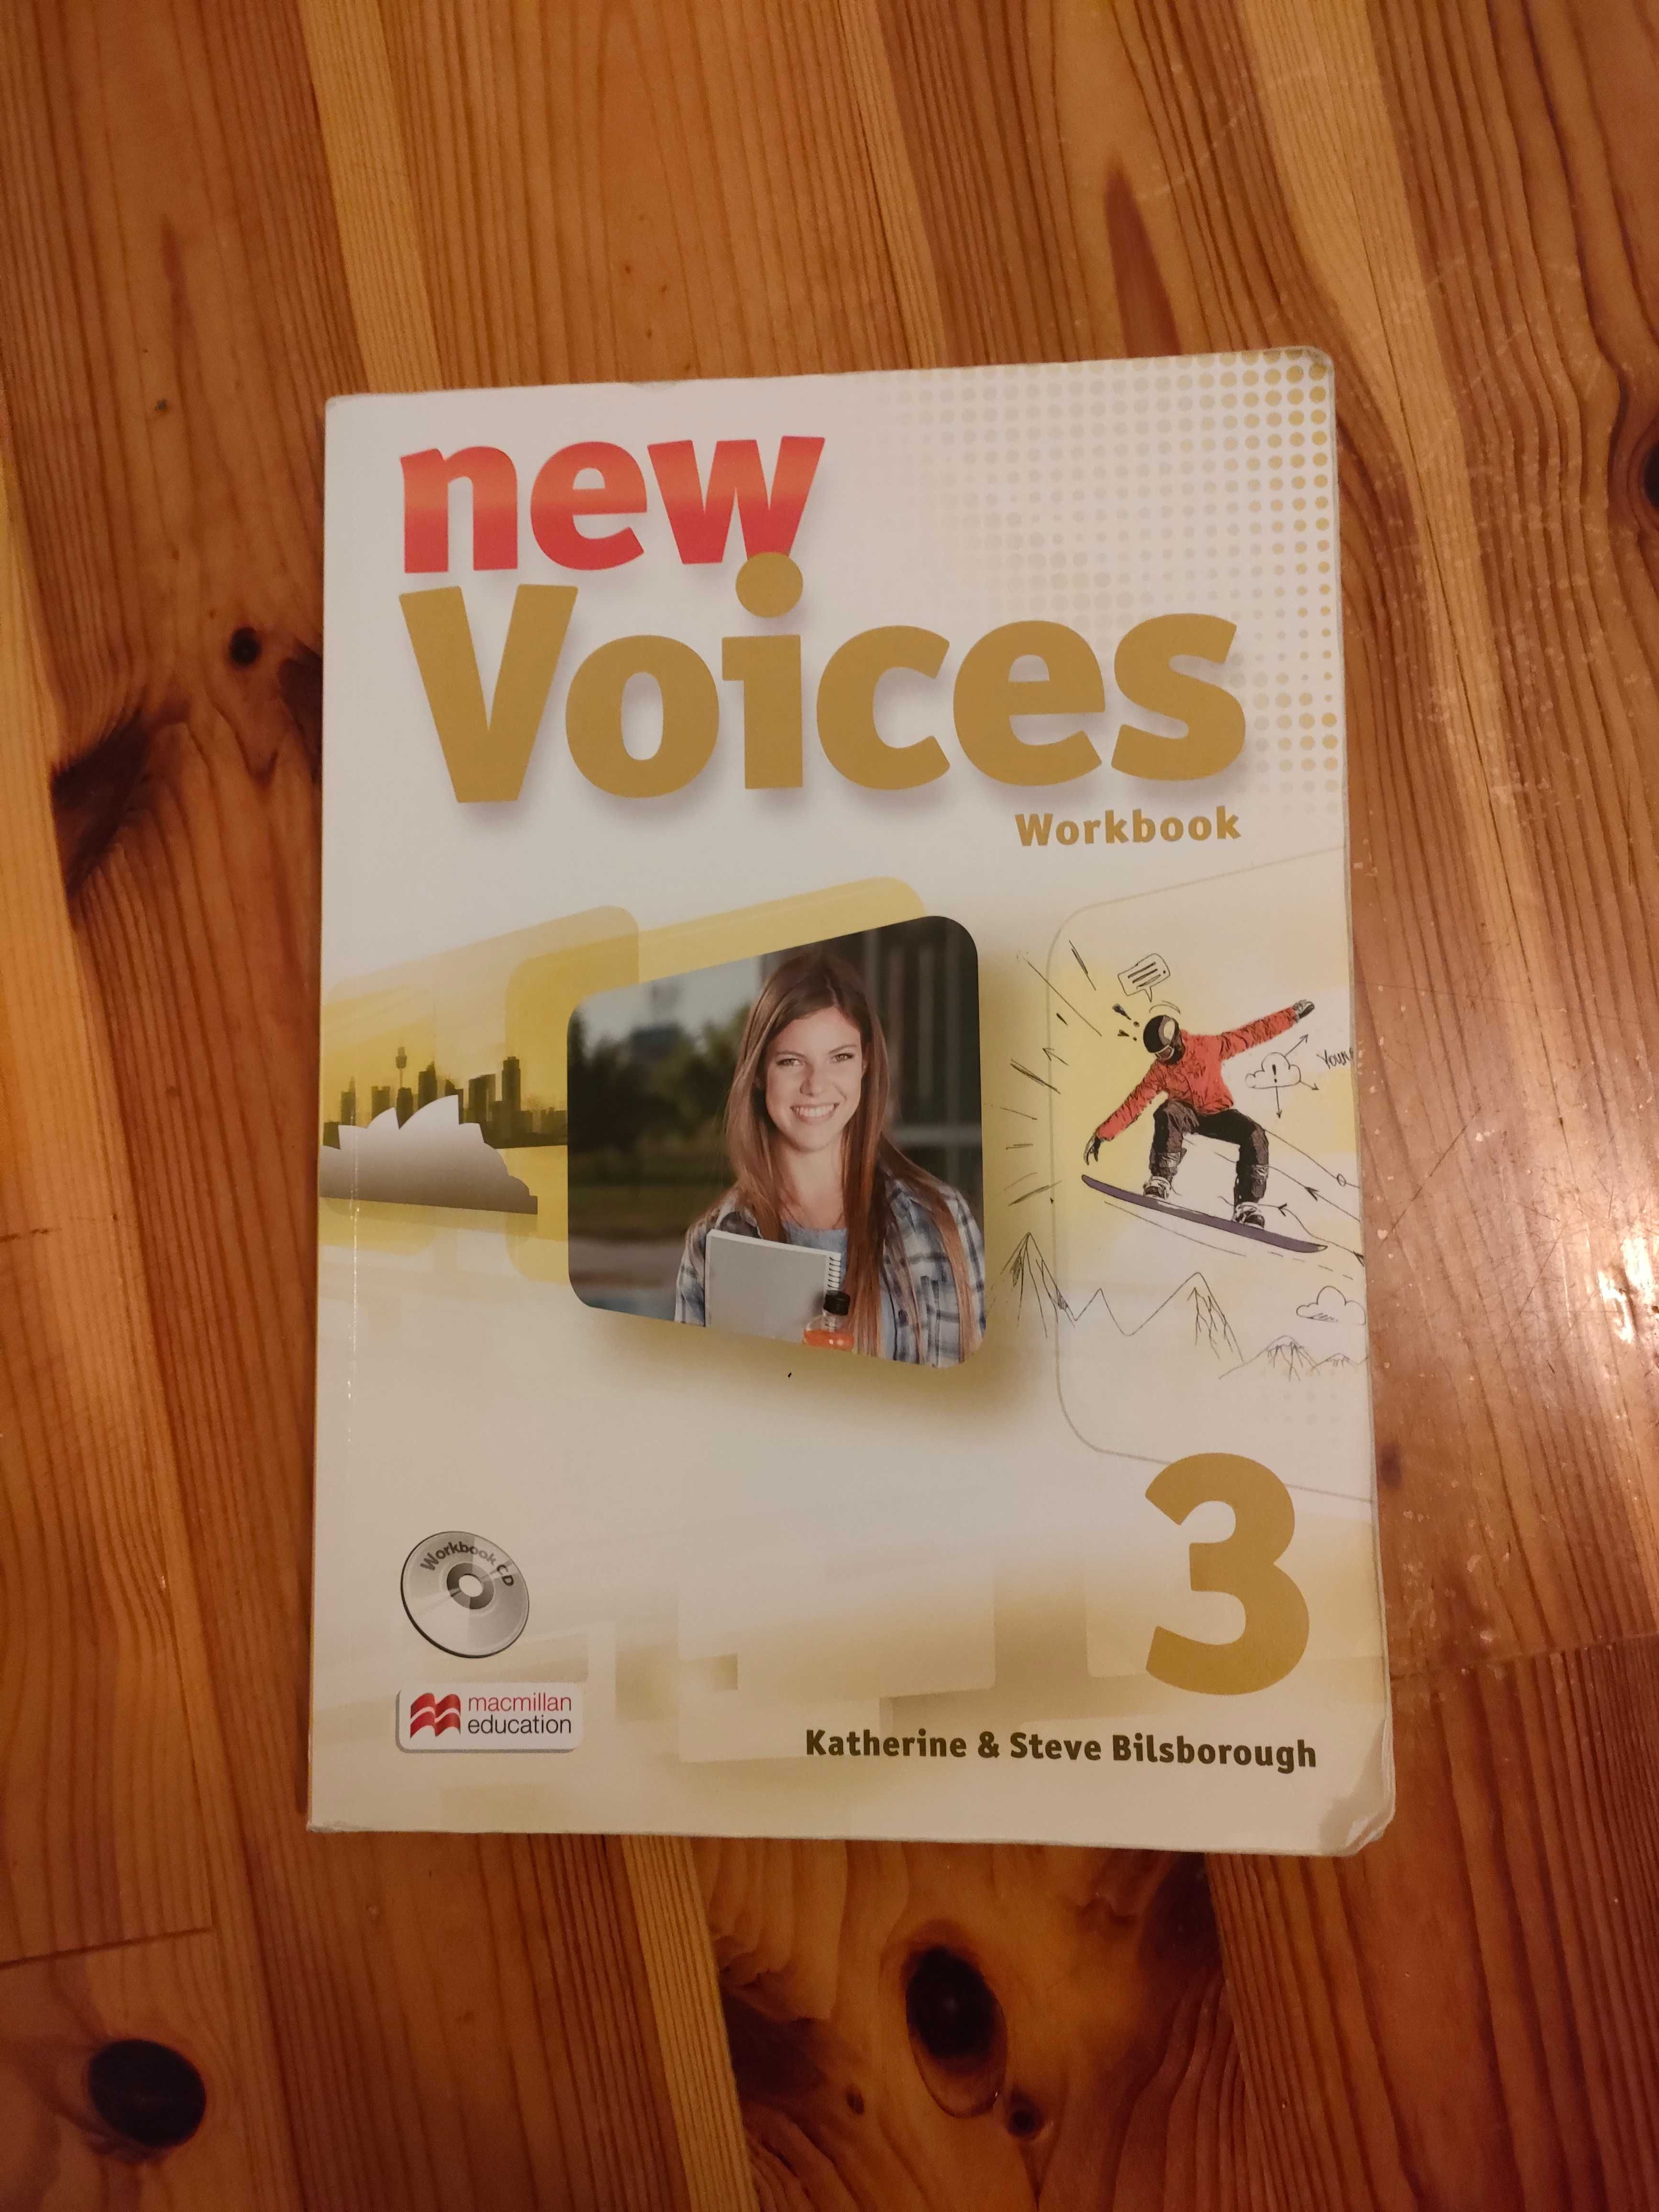 New Voices workbook